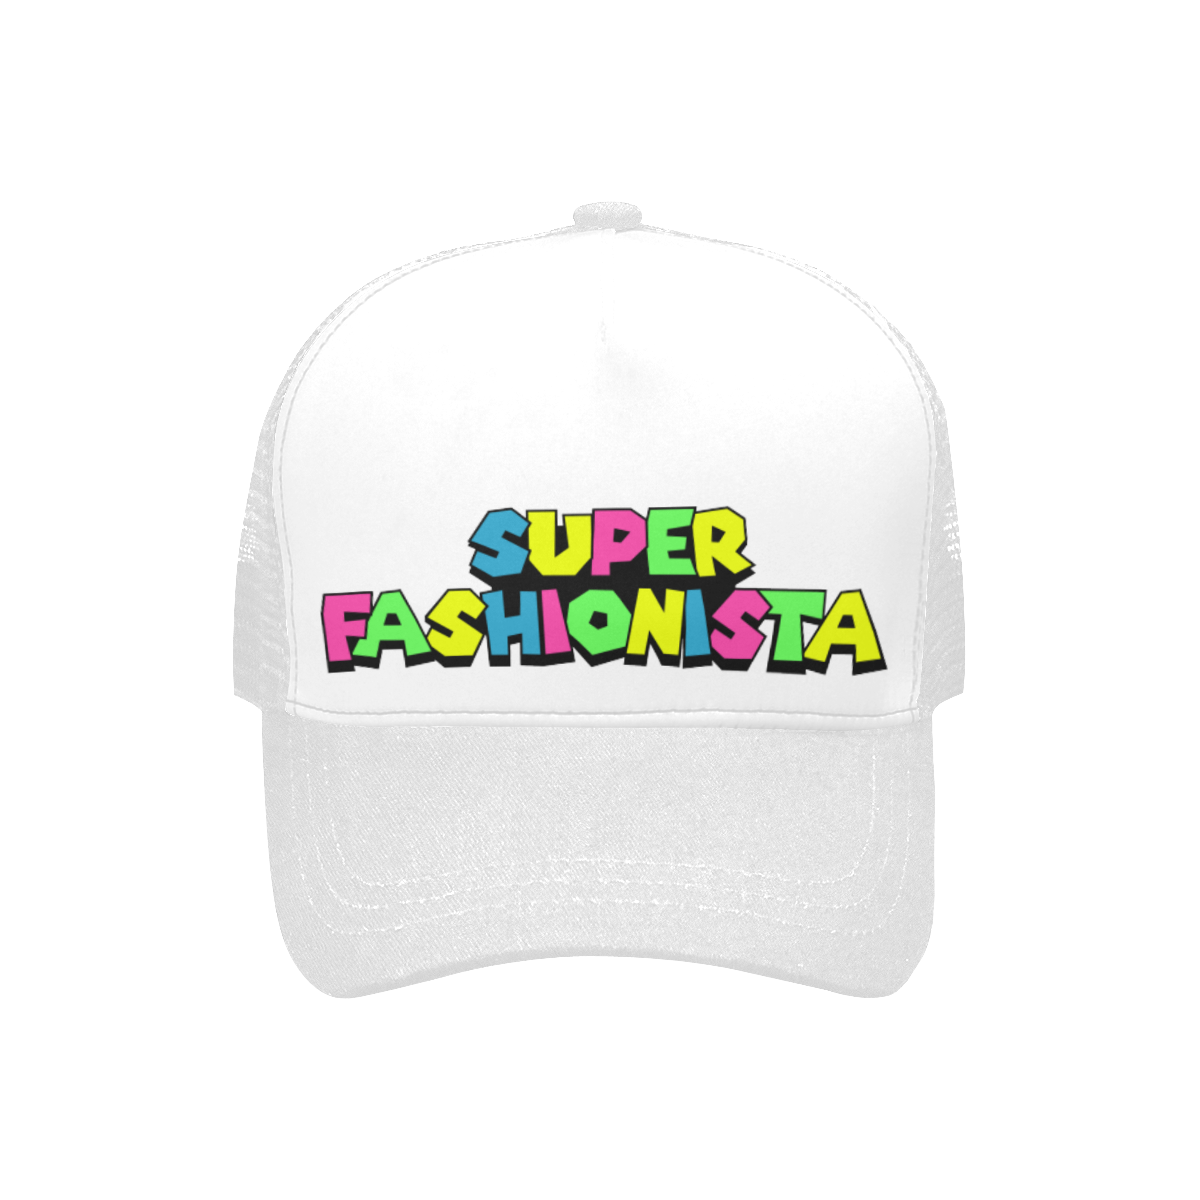 SUPER FASHIONISTA TRUCKER HAT